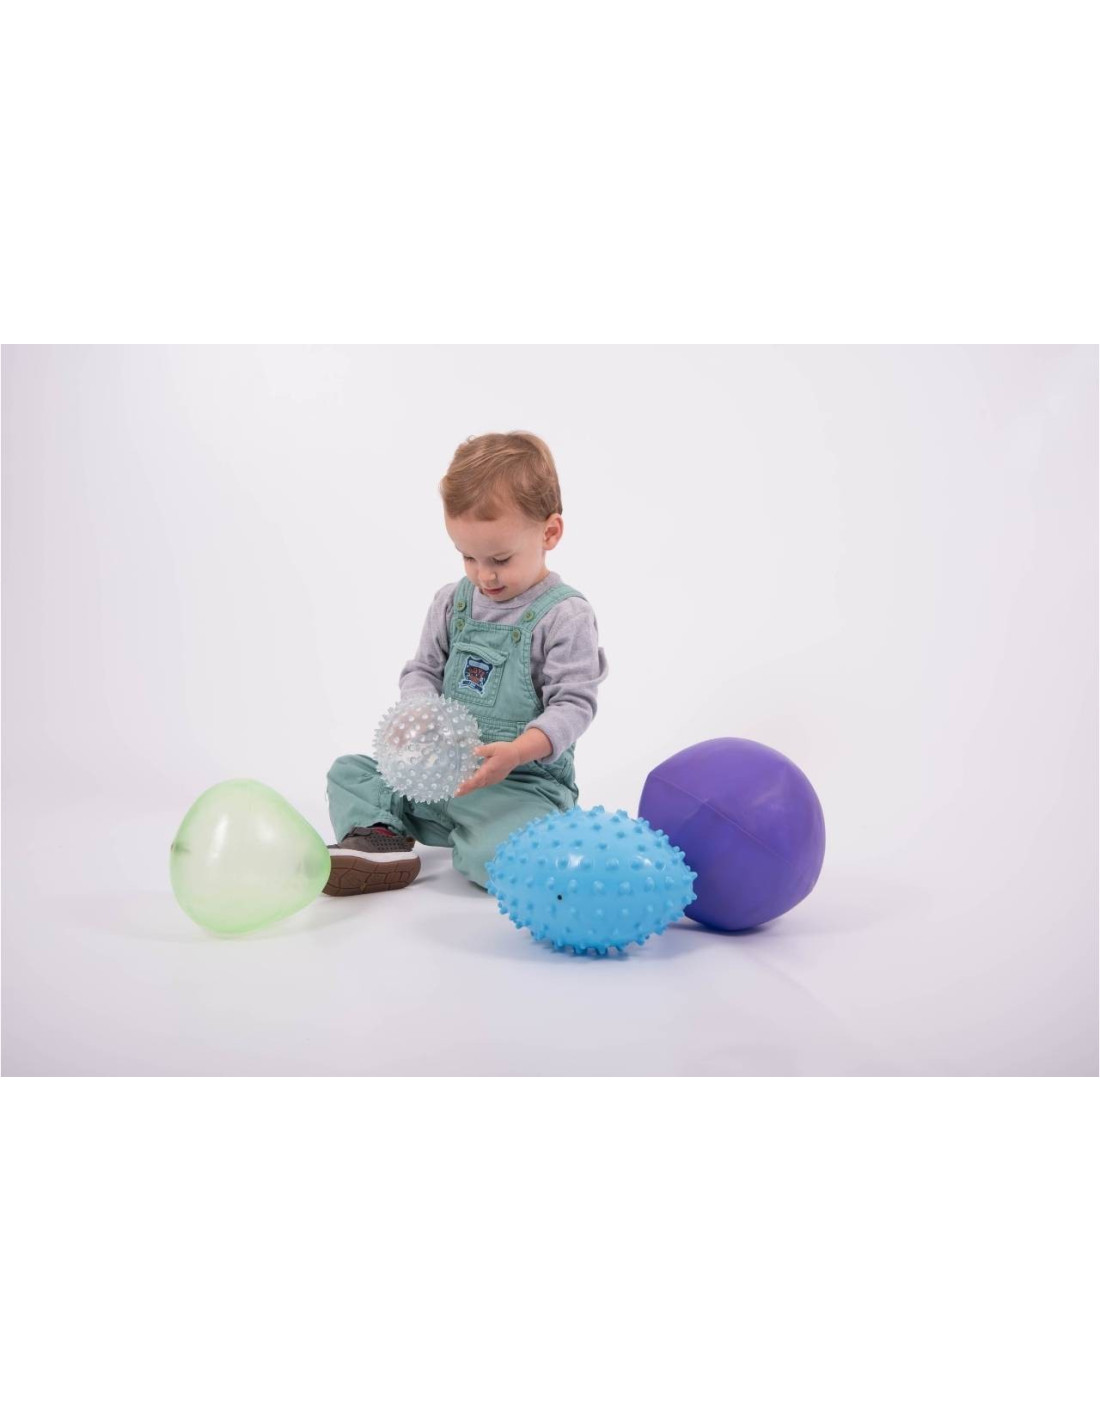 balles sensorielles - Matériel Montessori - Nido Montessori - jeux éducatif  éveil bébé